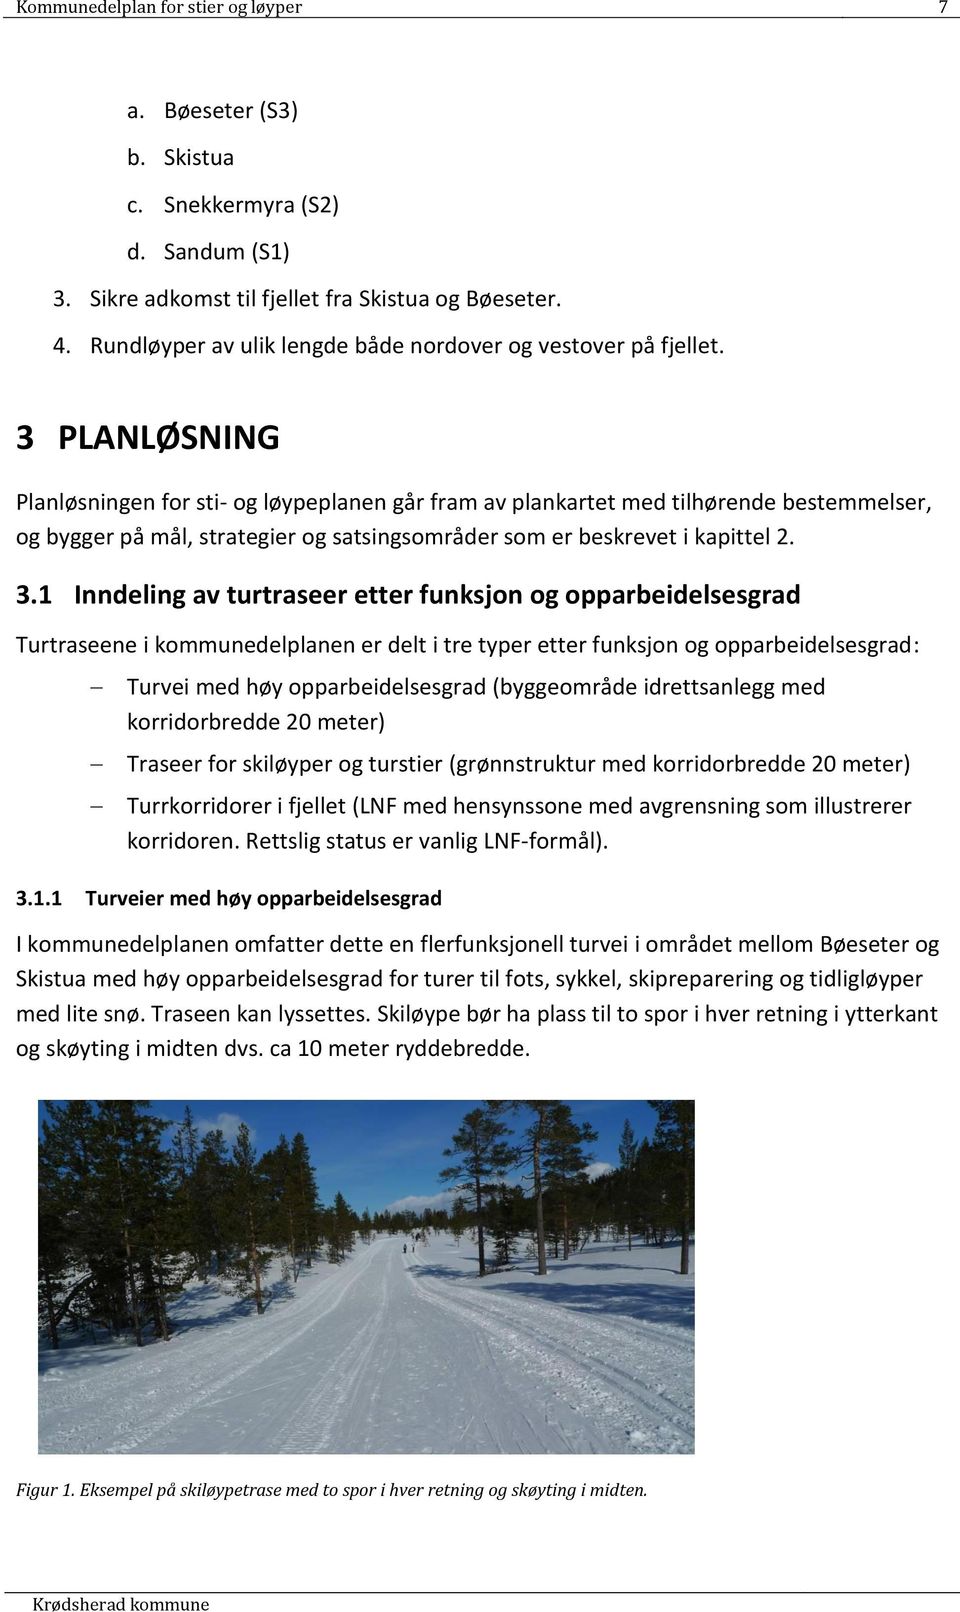 3 PLANLØSNING Planløsningen for sti- og løypeplanen går fram av plankartet med tilhørende bestemmelser, og bygger på mål, strategier og satsingsområder som er beskrevet i kapittel 2. 3.